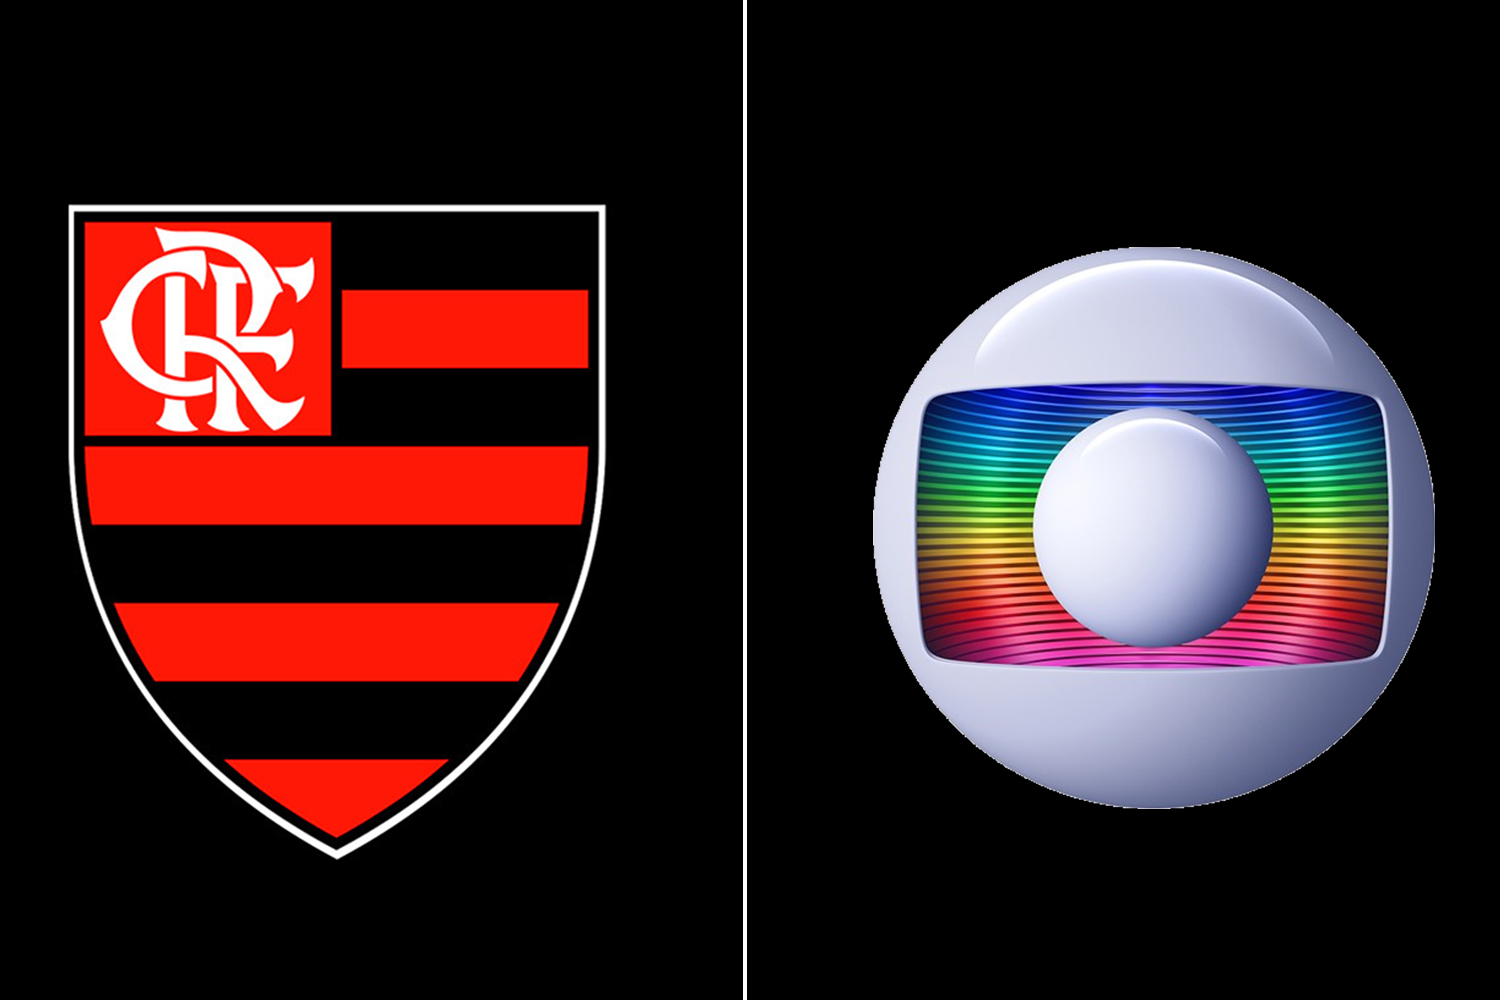 Flamengo volta atrás e vai transmitir jogo pela Fla TV